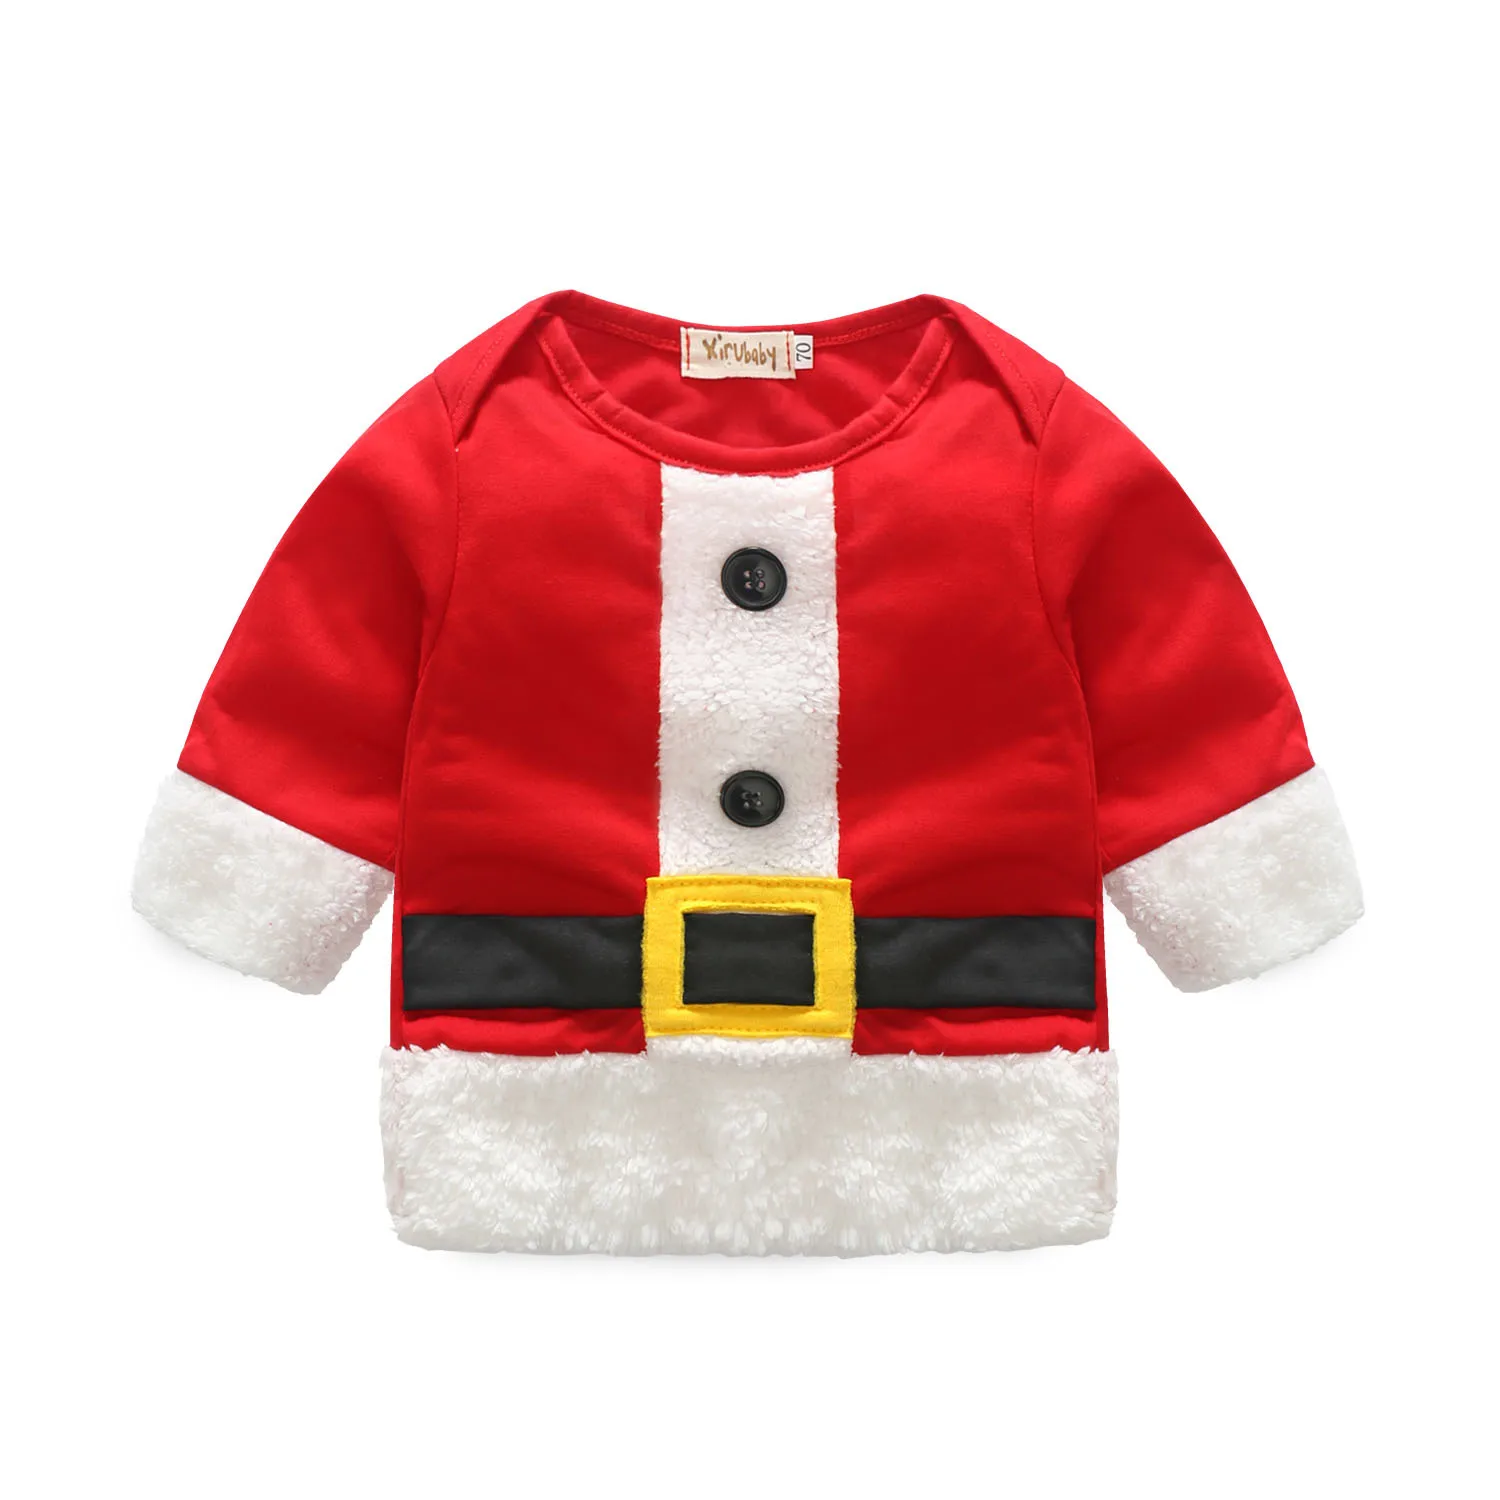 Новинка; Детский Рождественский костюм; костюм Санта-Клауса; Рождественский комплект одежды из двух предметов; Милая зимняя теплая одежда для малышей